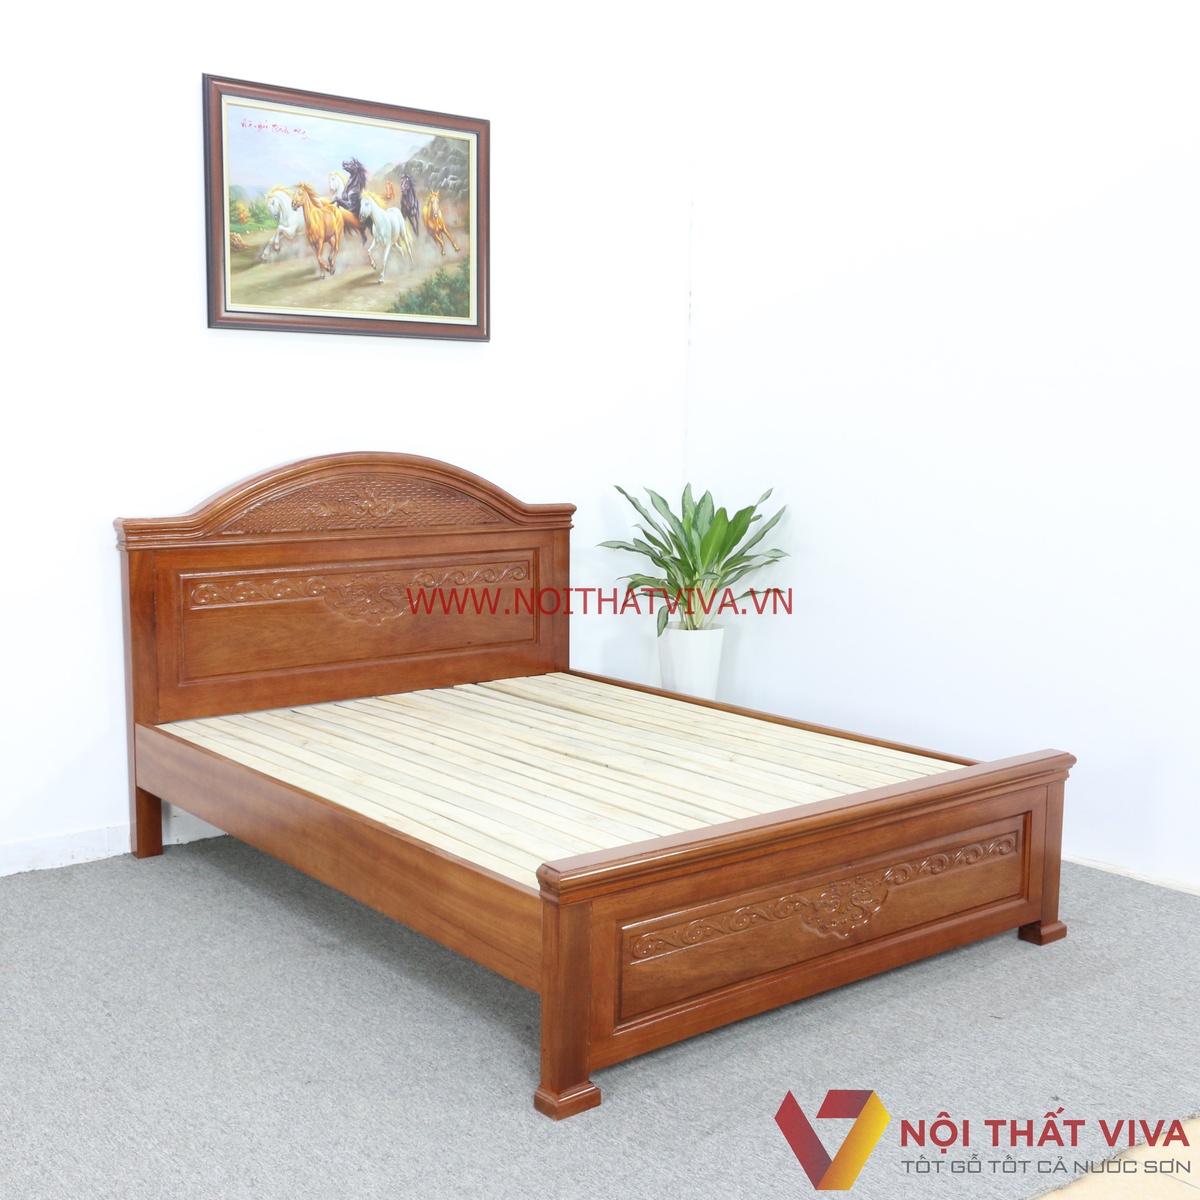 Loạt mẫu giường ngủ đẹp gỗ tự nhiên nổi đình đám nhất hiện nay